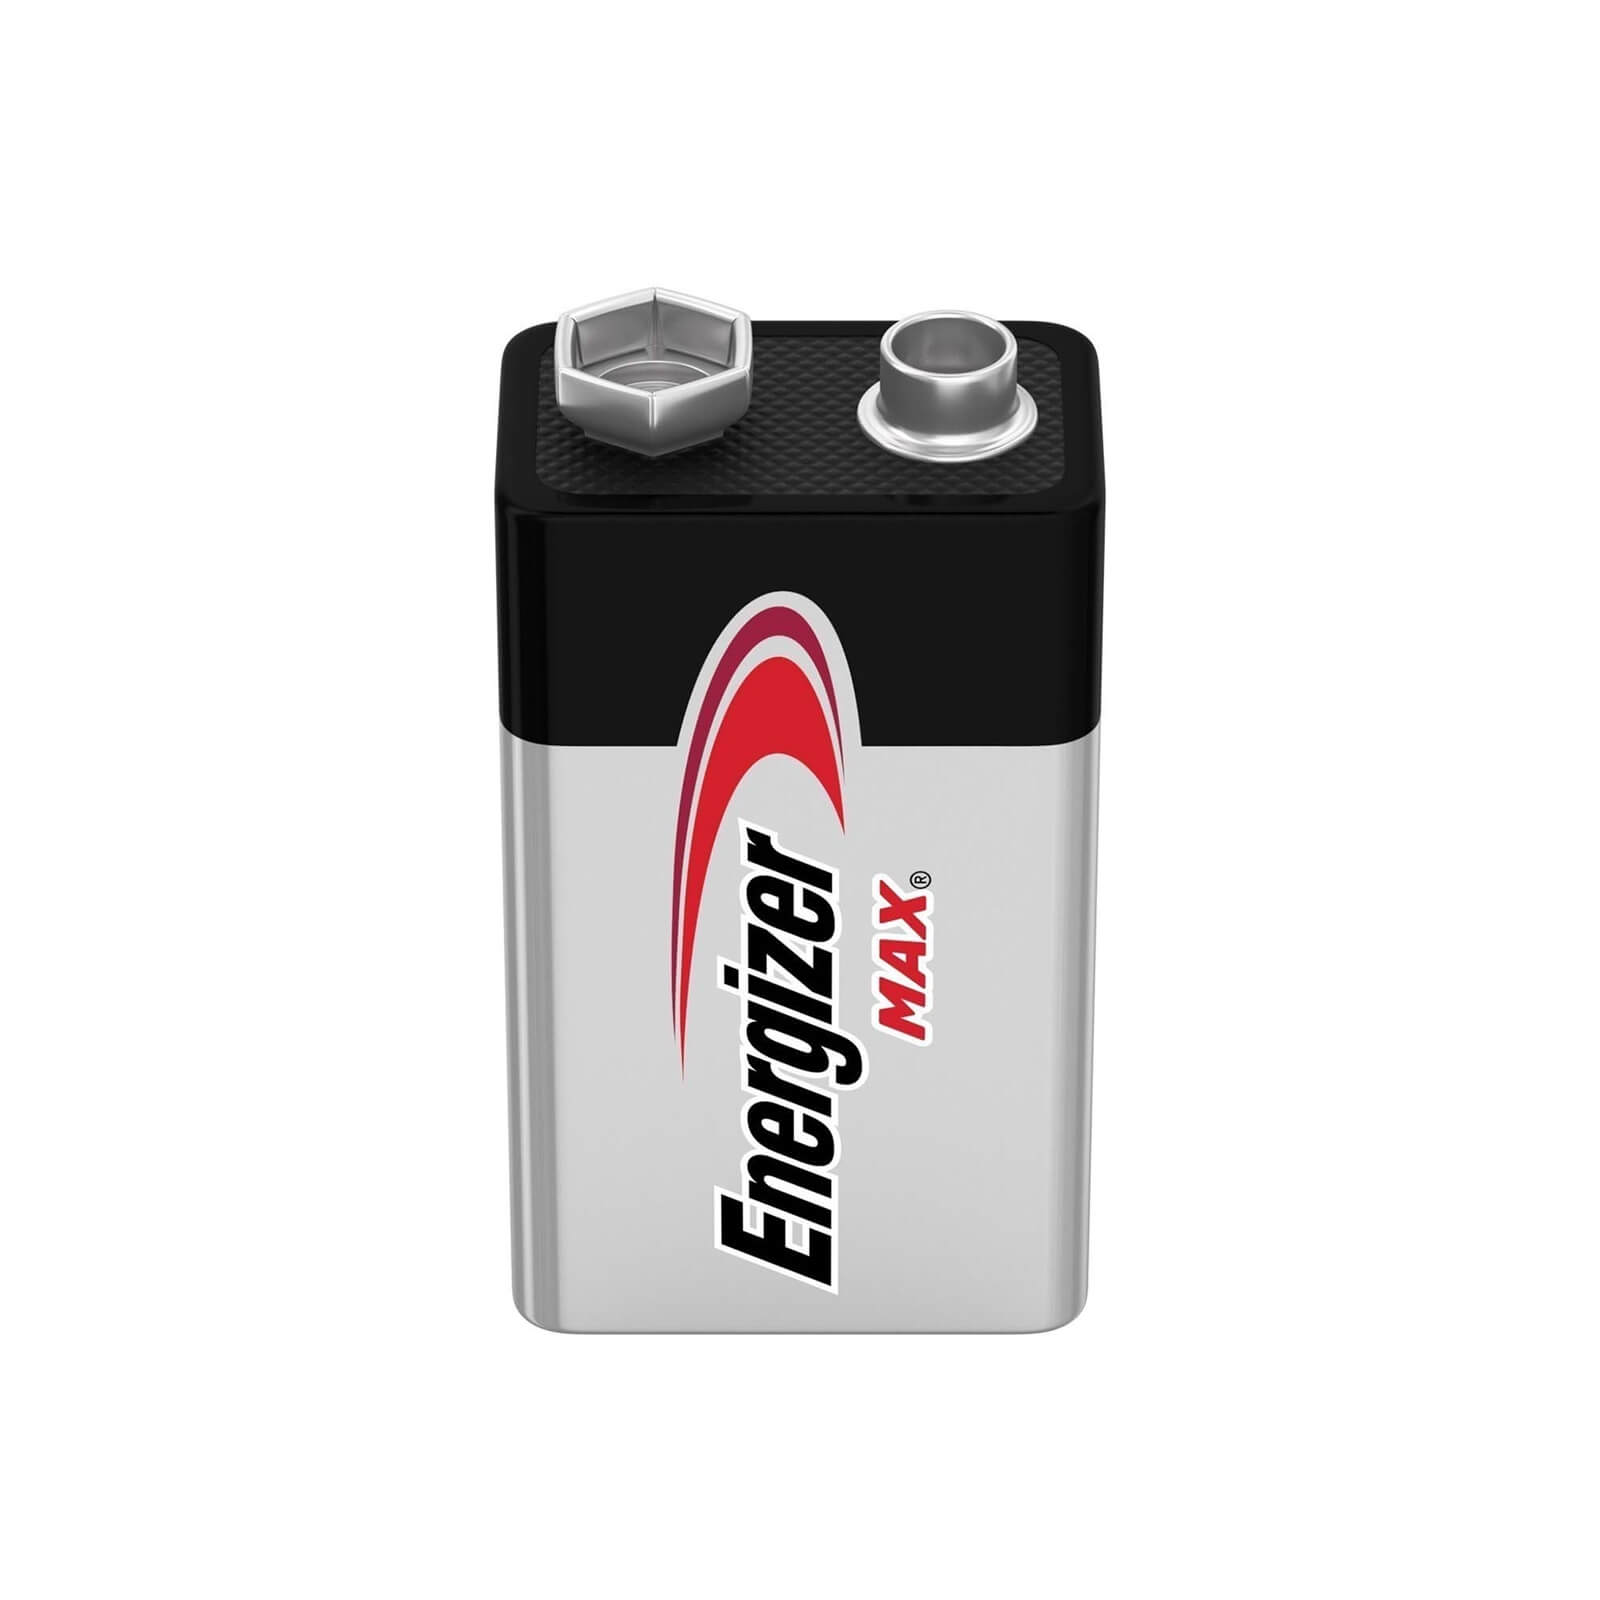 Energizer MAX Alkaline 9V Battery - 1 Pack